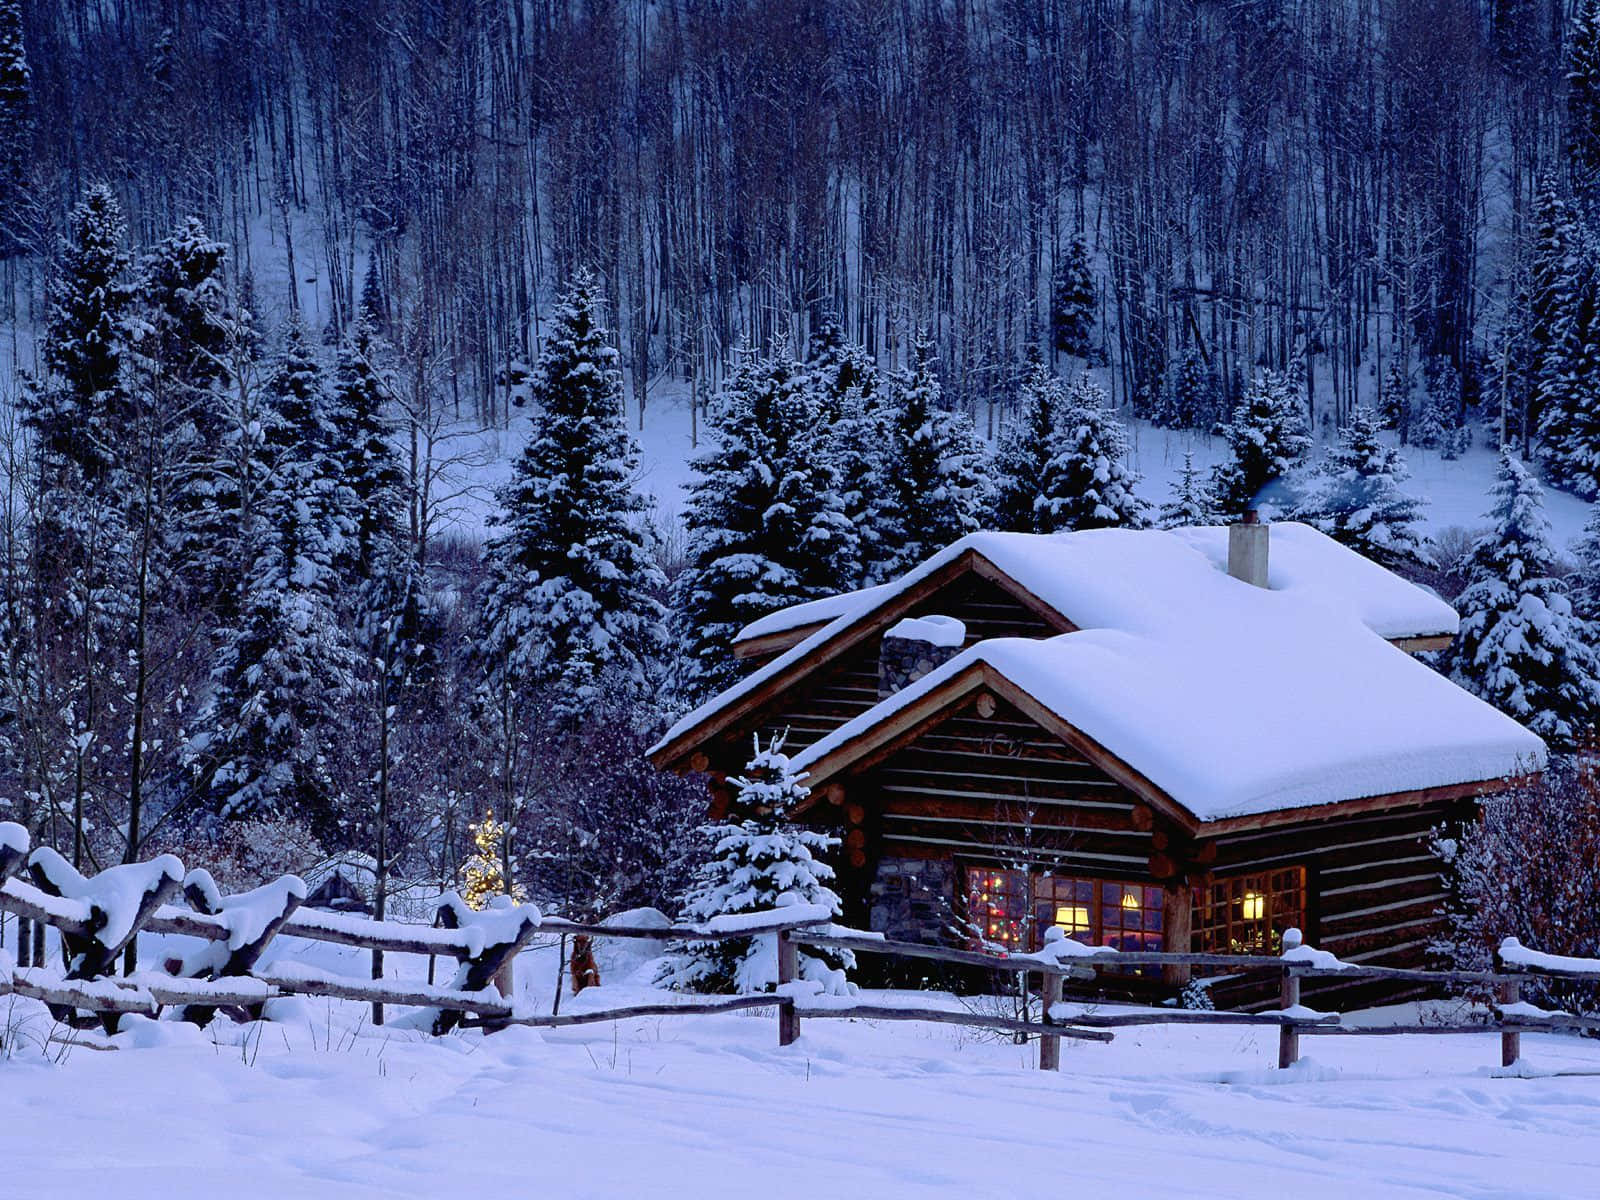 Cozy Log Cabin Winter Wonderland Background